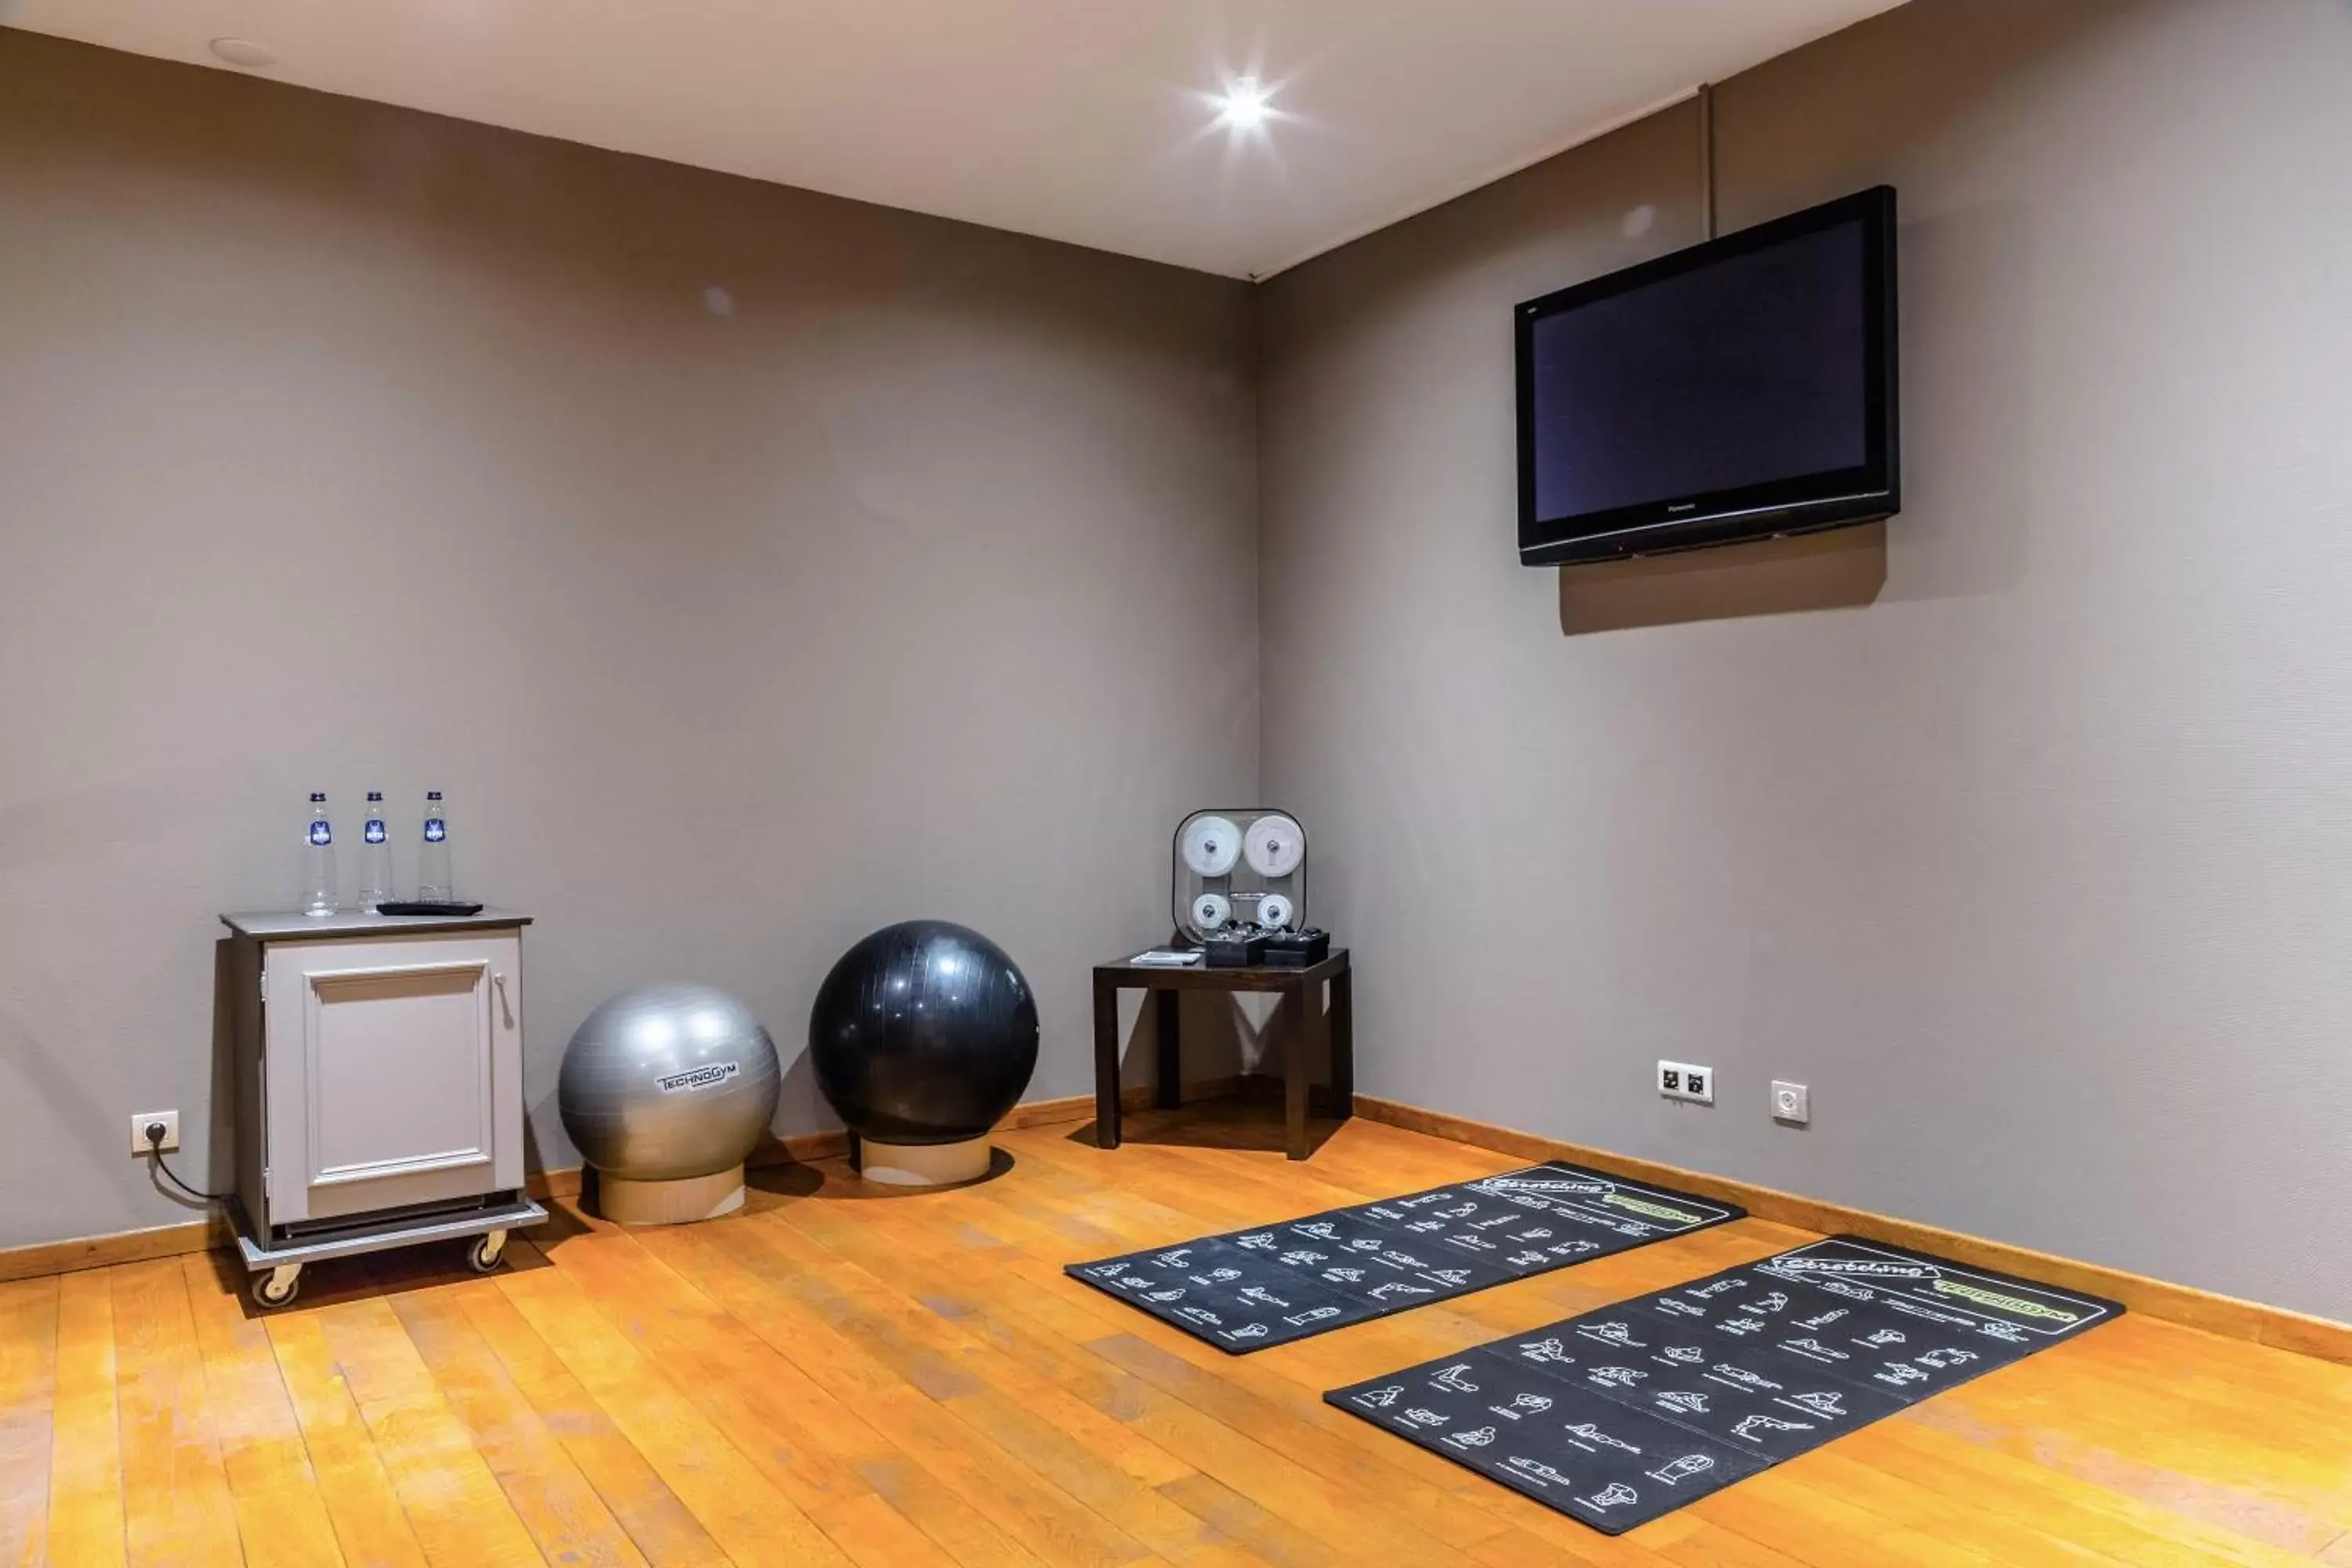 Fitness centre/facilities, TV/Entertainment Center in Le Chateau de Namur